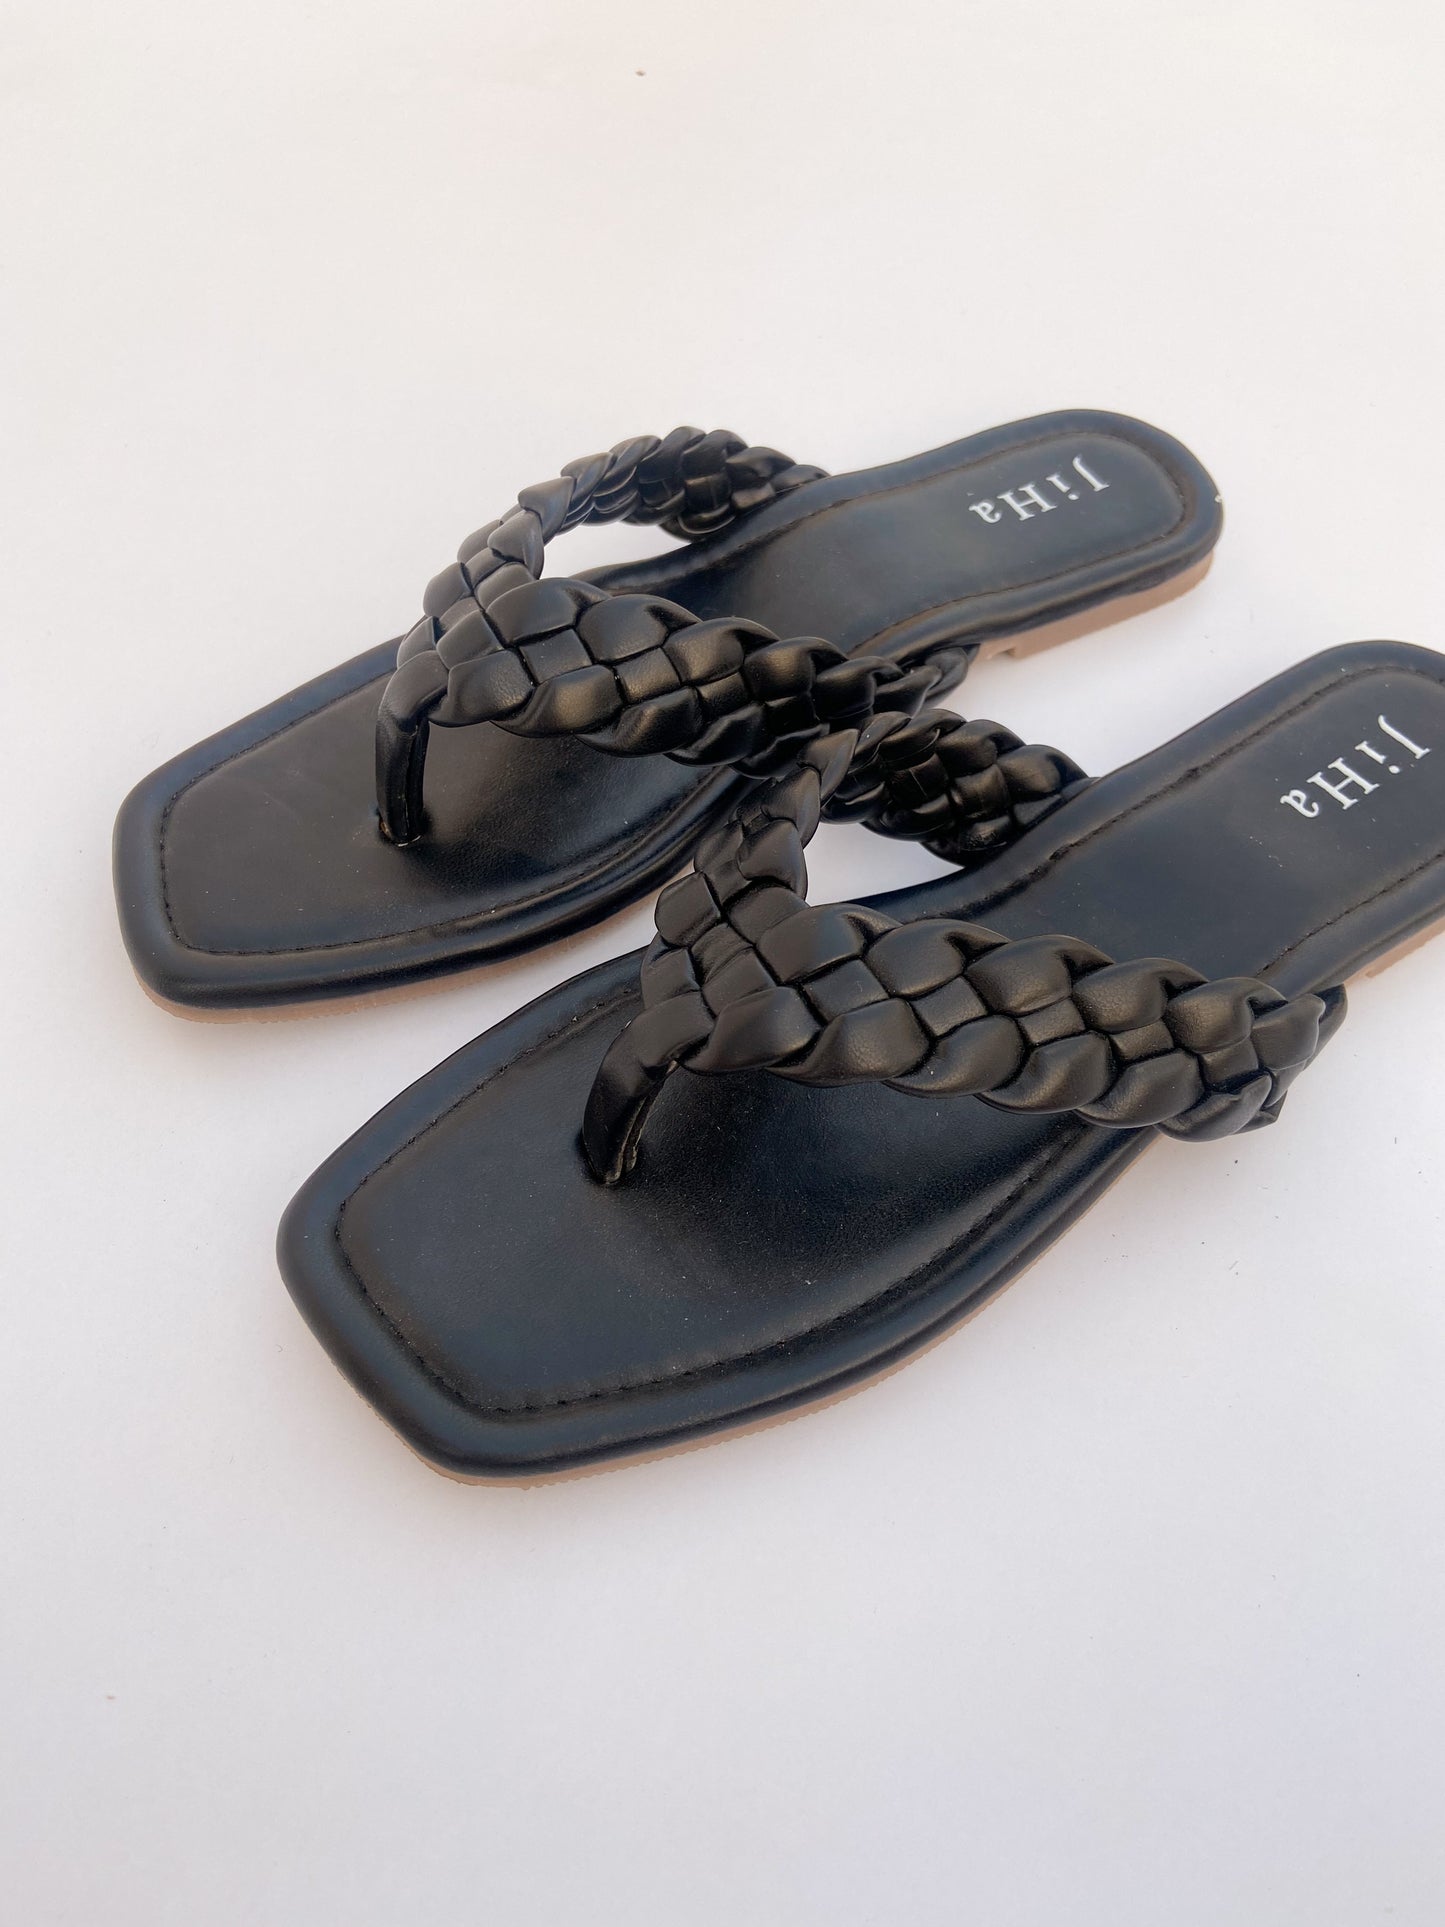 Black flat slide sandals